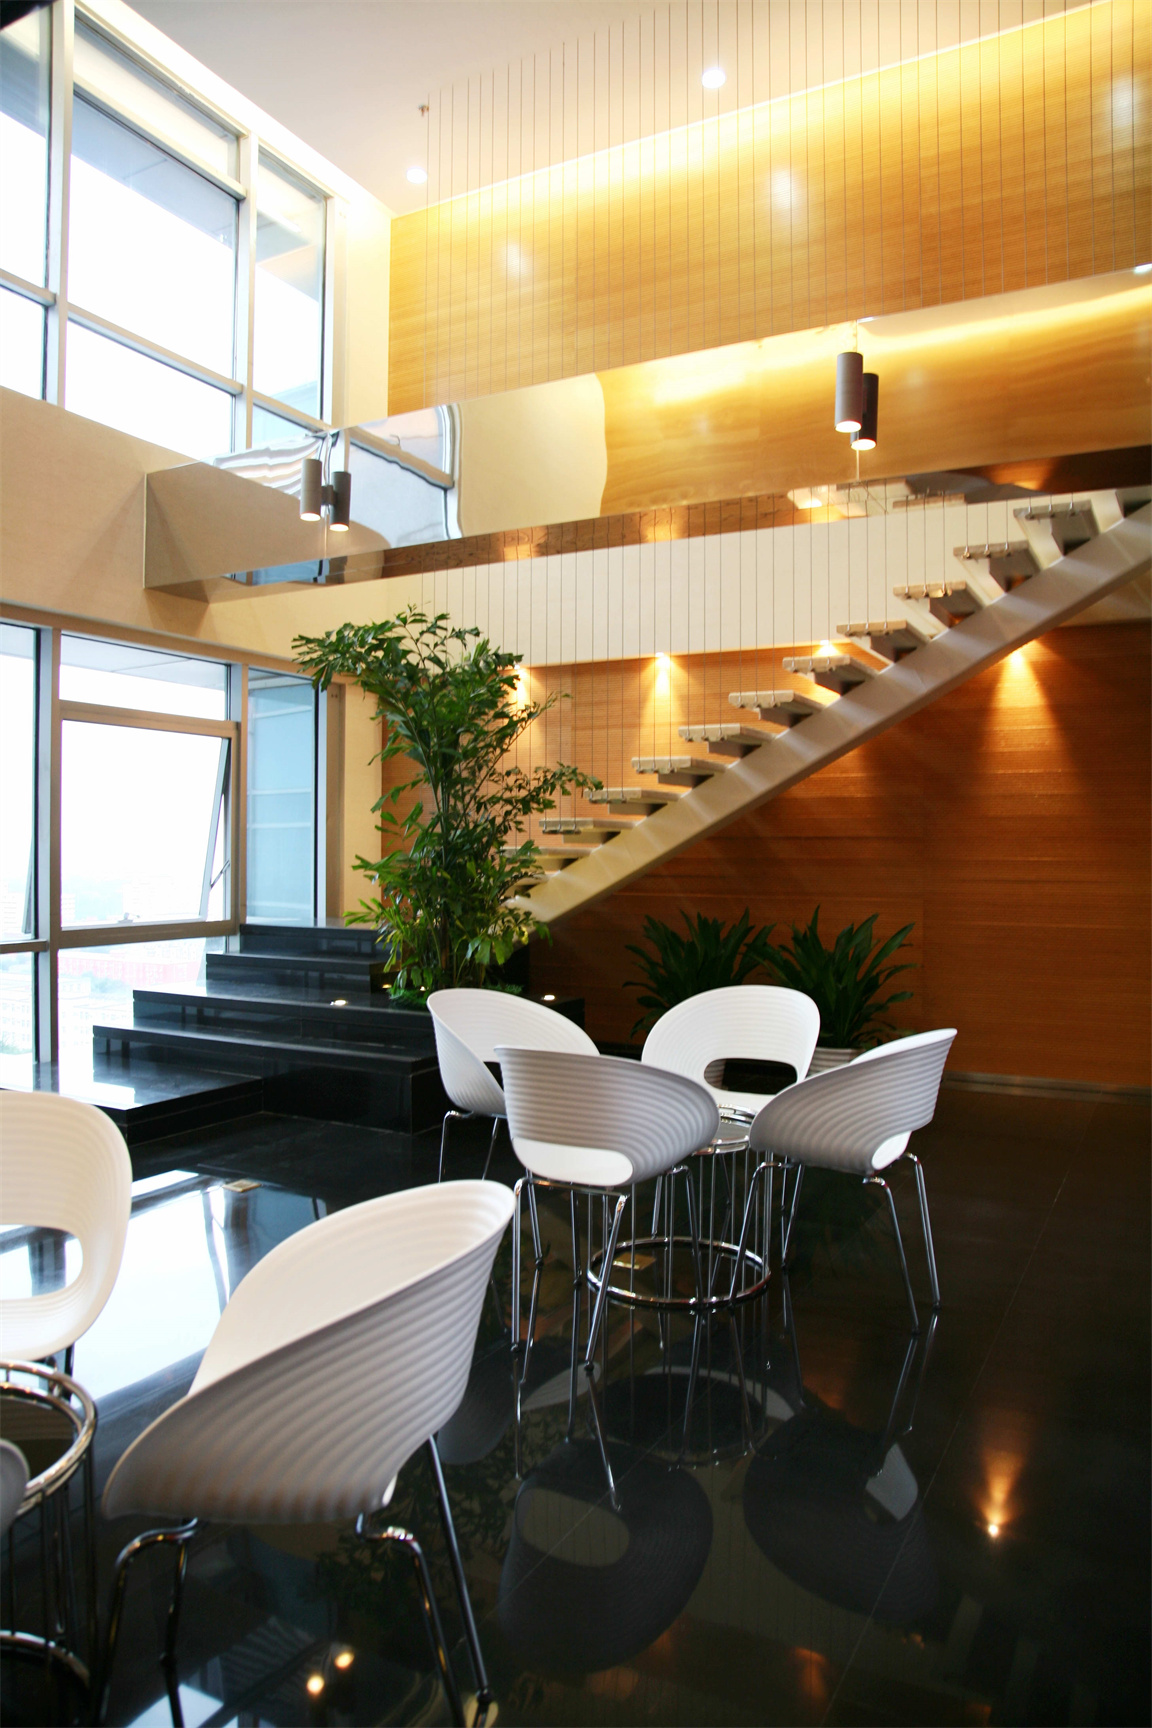 筑邦设计院茶几椅子休闲空间案例照片